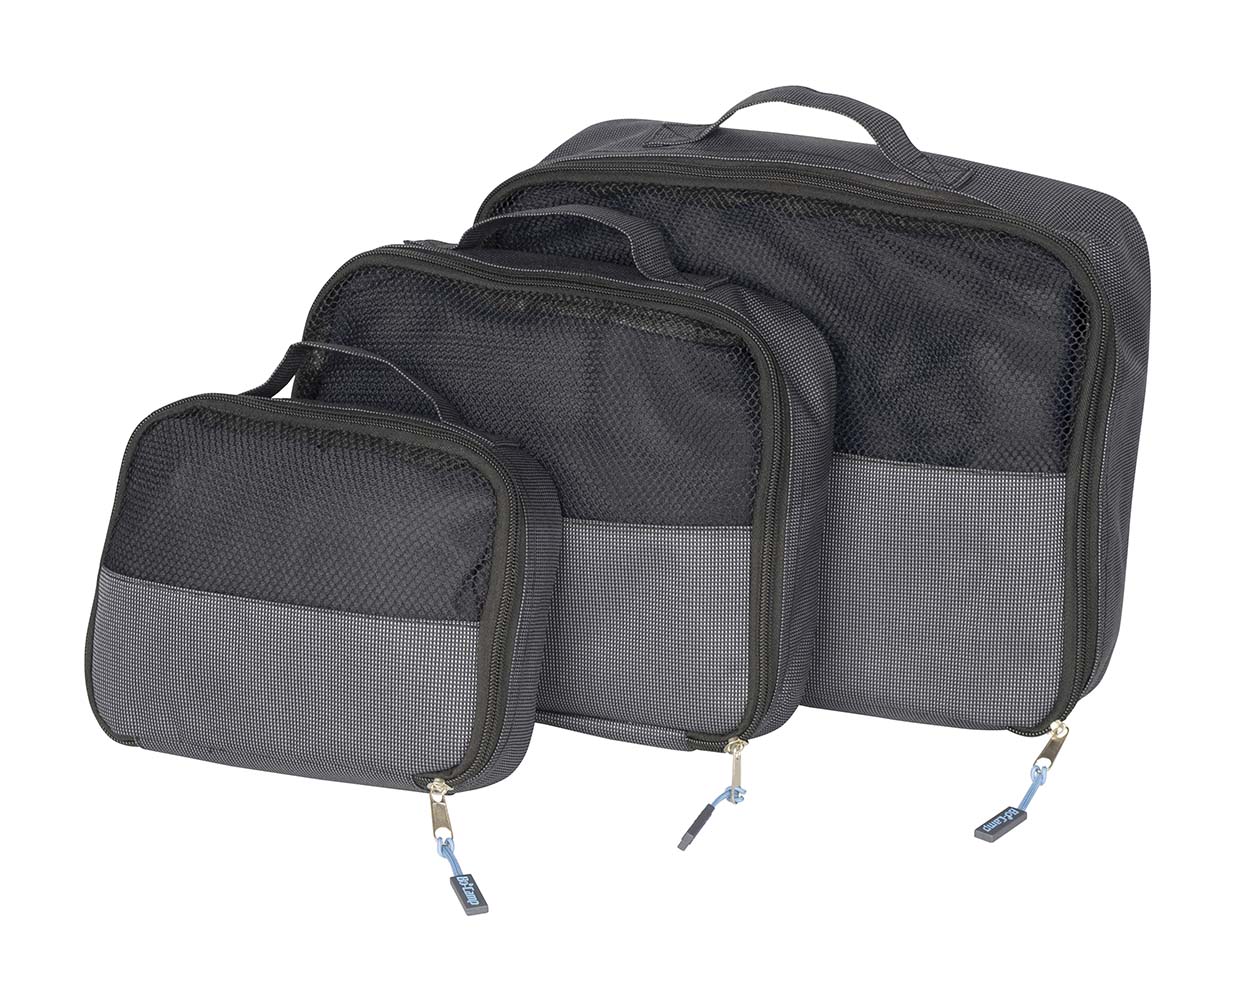 7504370 Praktisches Reisepackungswürfelset in 3 verschiedenen Größen. Ideal zum Ordnen von Sachen, zum Organisieren Ihres Koffers oder von schmutziger oder sauberer Wäsche. Die Tasches haben eine Netzfront und schließen mit einem Reißverschluss.